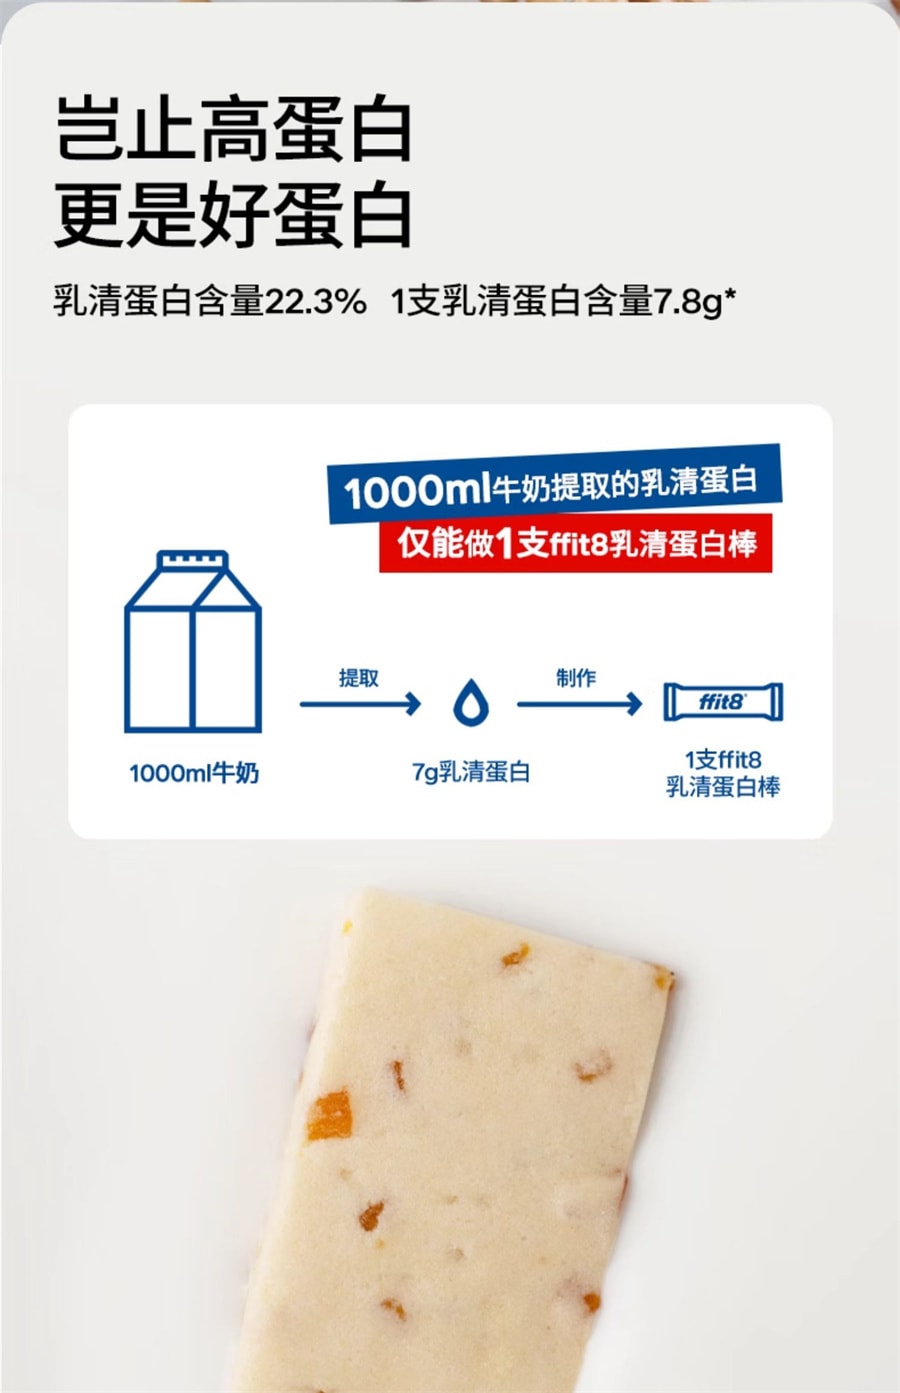 【中國直效郵件】ffit8 乳清蛋白棒代餐健身運動能量棒飽足抗餓食品進口乳清蛋白 7種明星口味